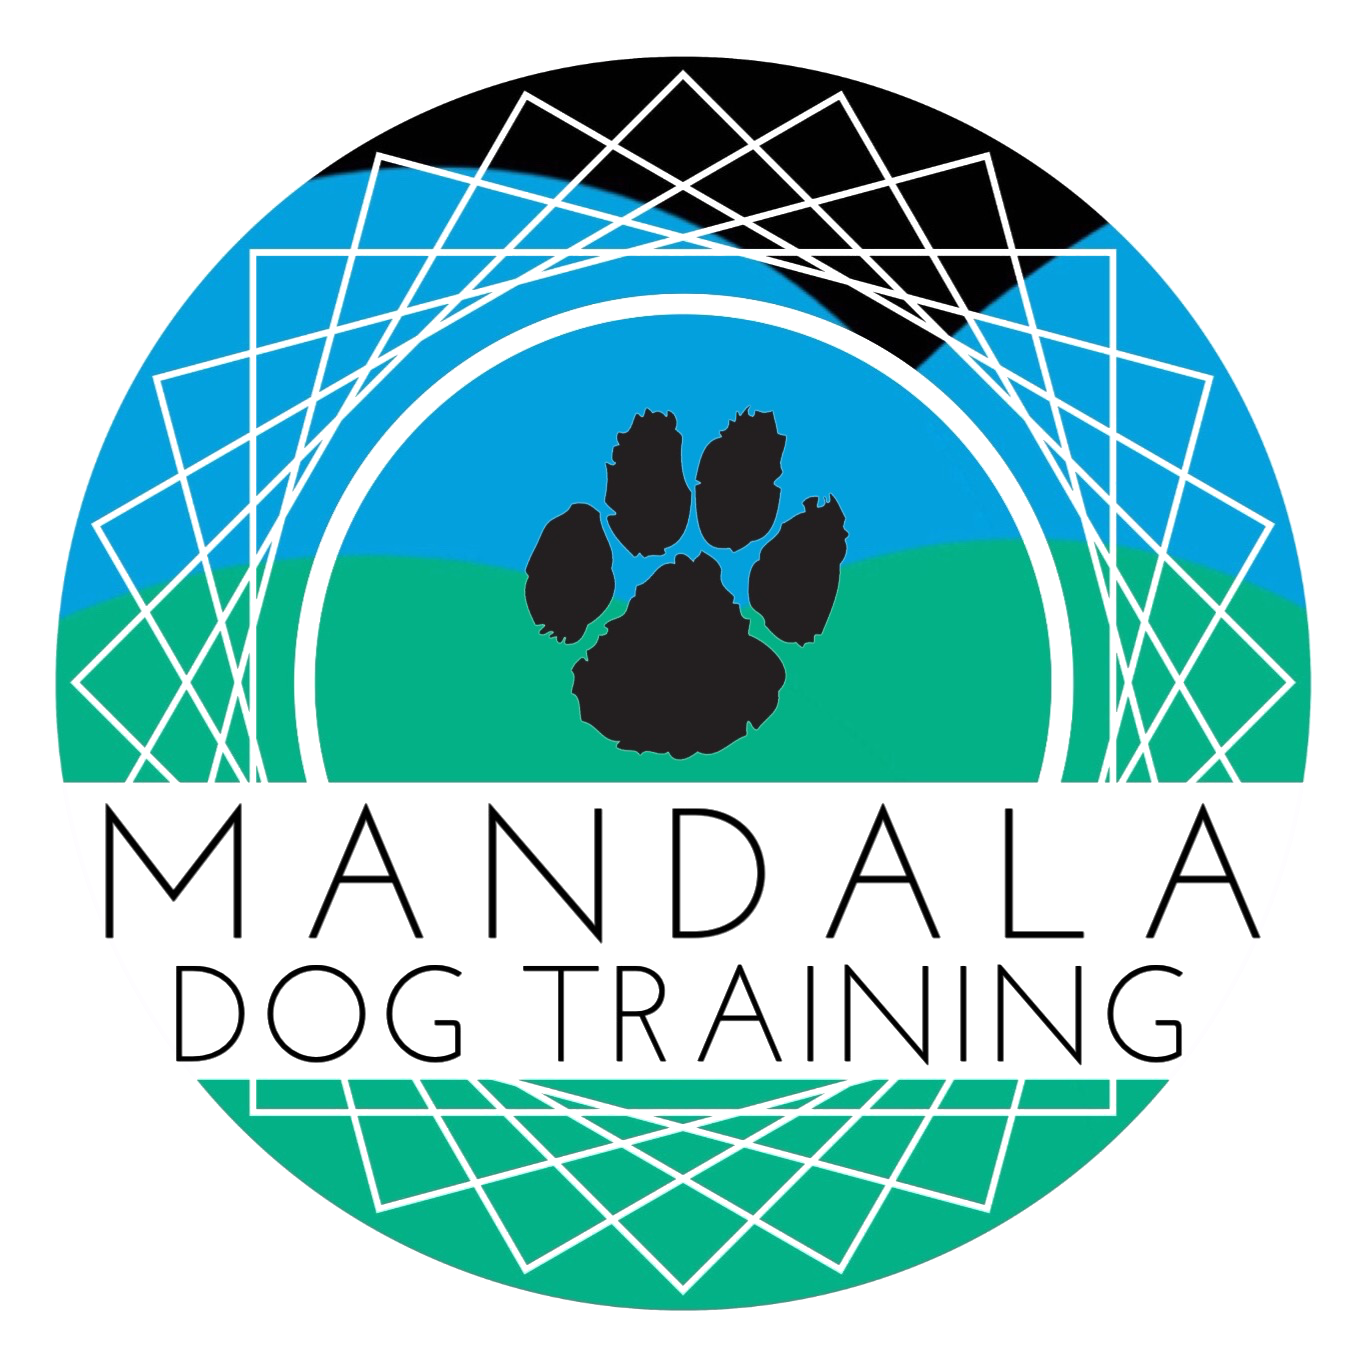 Mandala dog training